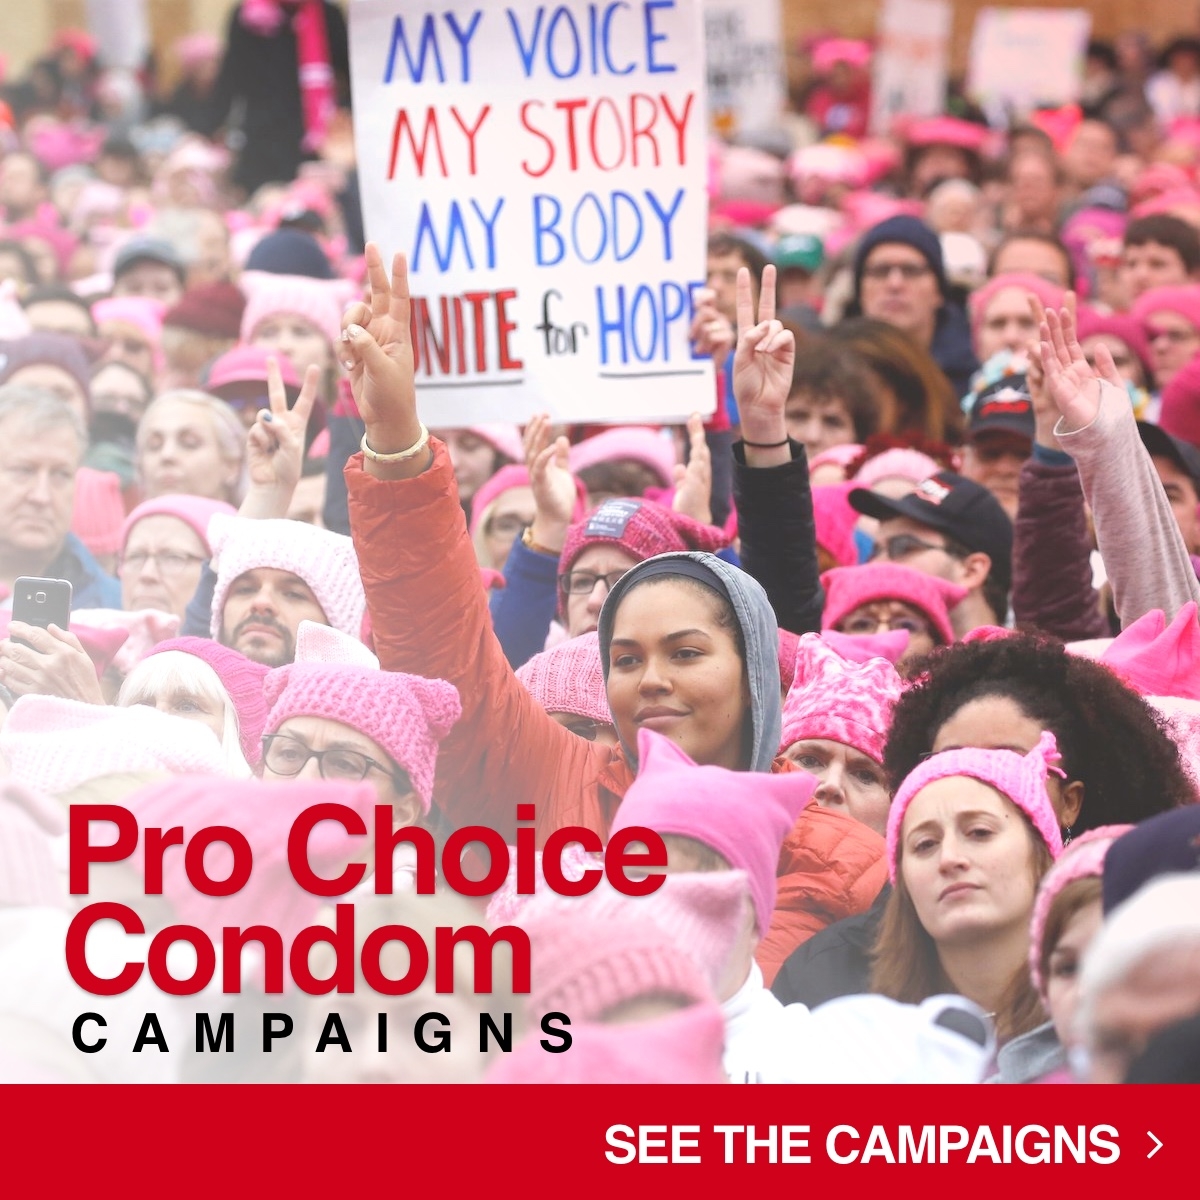 Pro-Choice Condoms